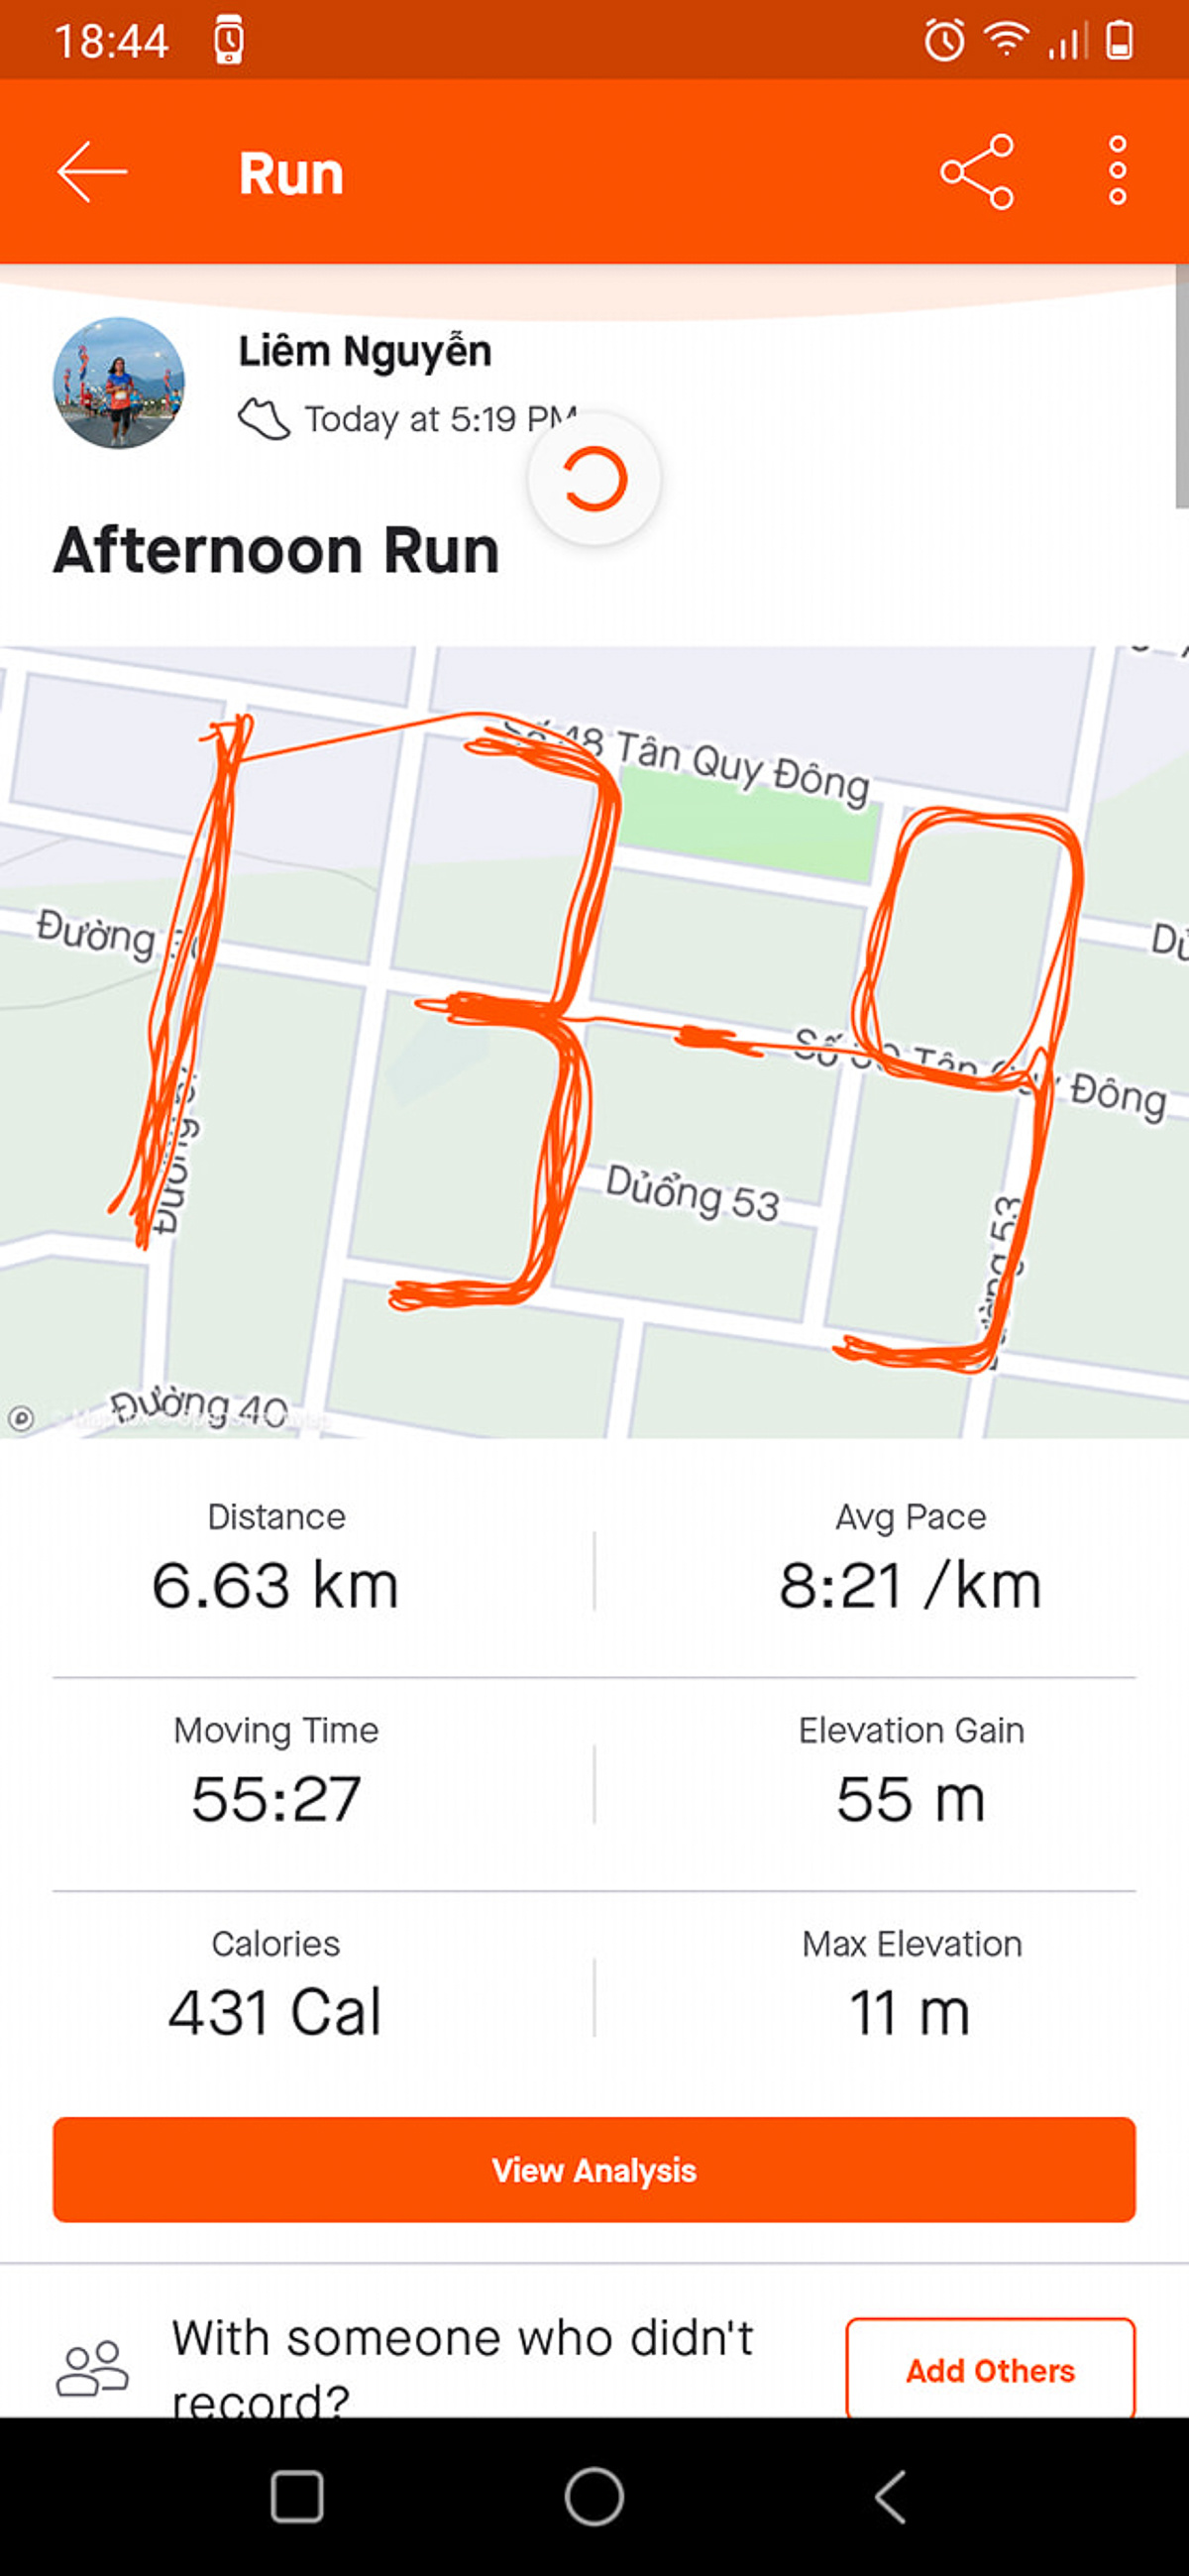 <p> Anh Nguyễn Thanh Liêm - Synnex FPT có bài dự thi đúng chuẩn 'runner nhà F'. Anh là một gương mặt không xa lạ trong giới chạy FPT. Gần đây nhất, anh tham dự VnExpress Marathon Quy Nhơn 2020 ở cự ly 21 km.</p>